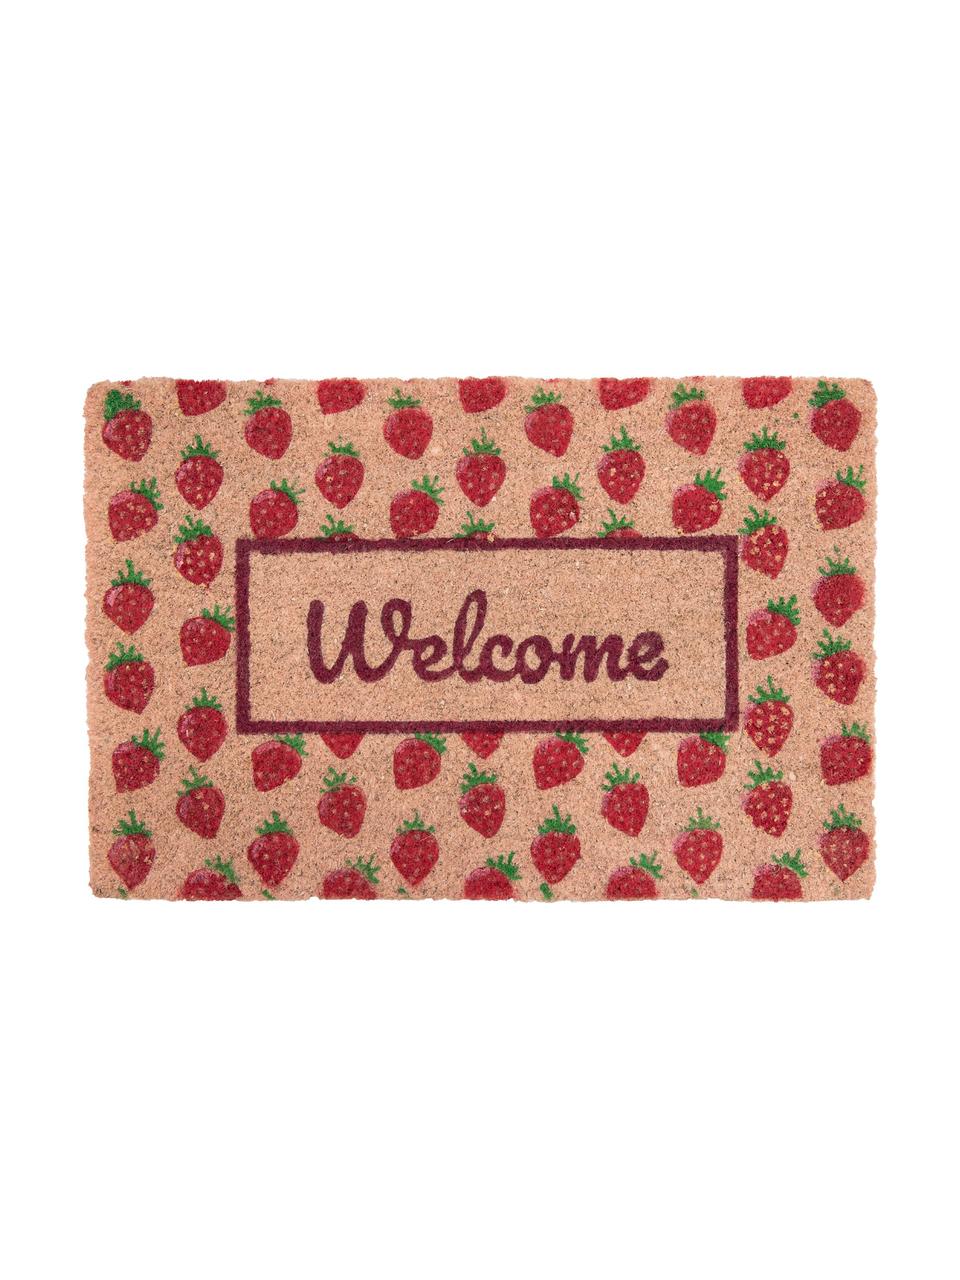 Fußmatte Welcome mit Erdbeeren, Oberseite: Kokosfaser, Unterseite: PVC, Rosa, Rot, Grün, 40 x 60 cm